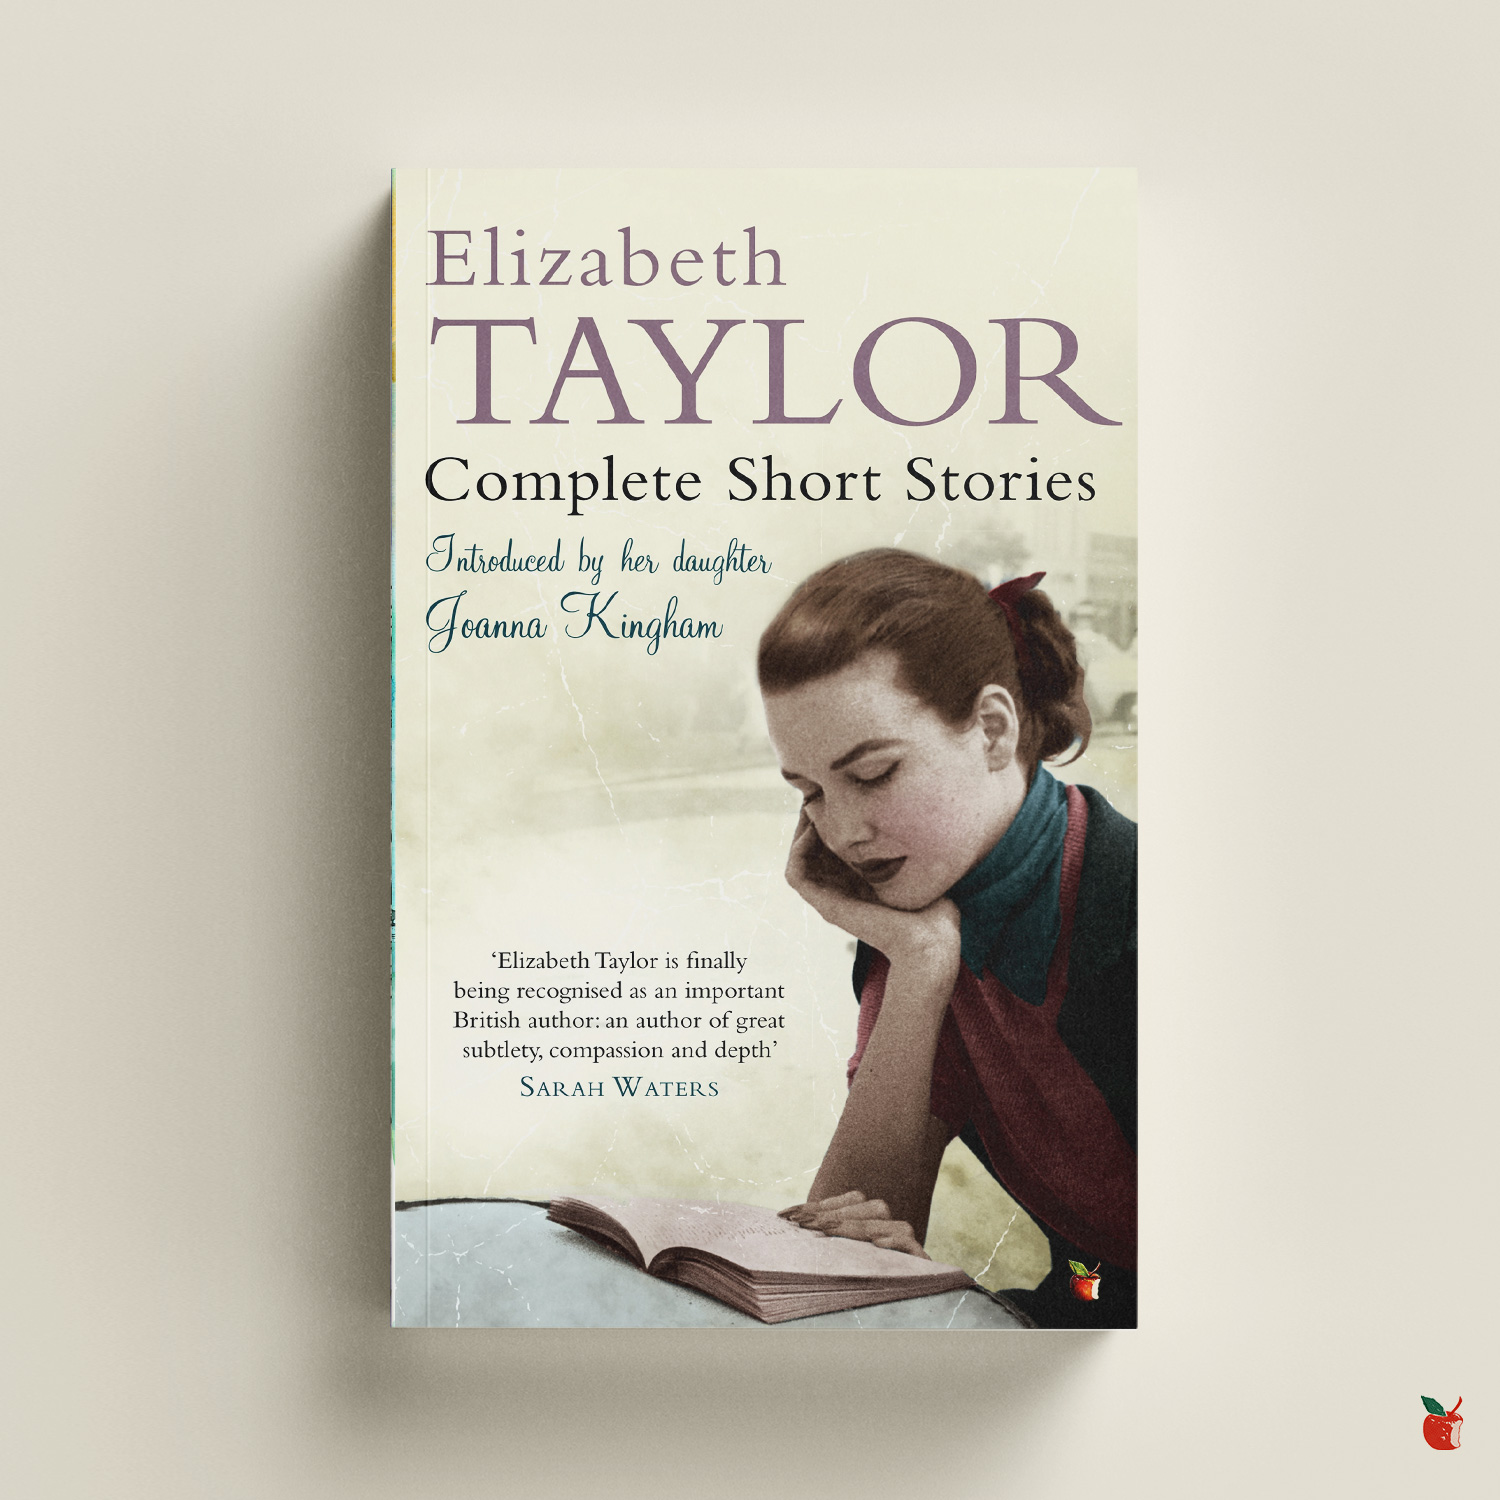 Complete Short Stories of Elizabeth Taylor